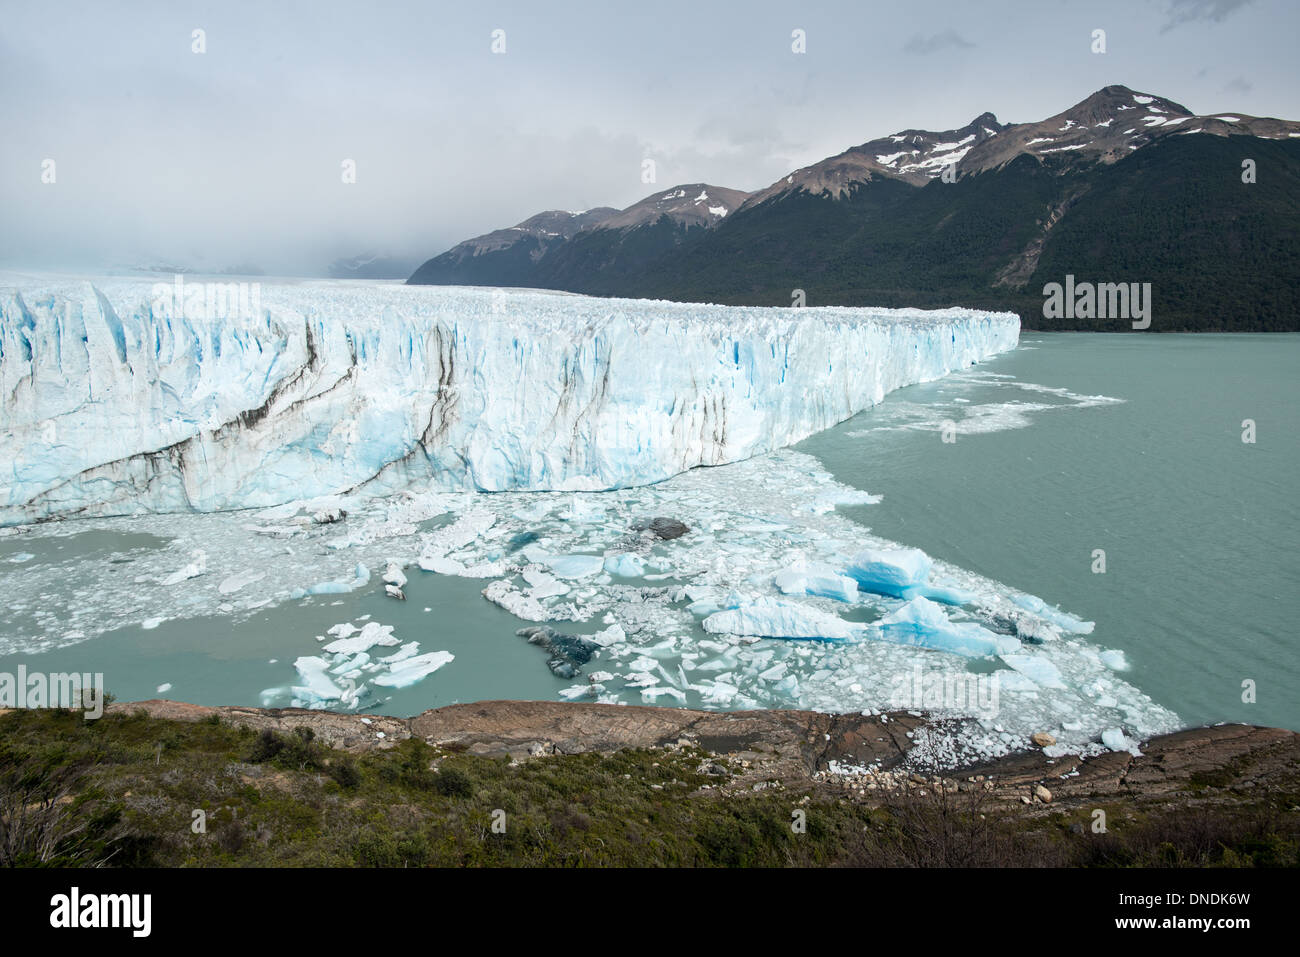 Forest and Glacier, Perito Moreno Glacier Los Glaciares National Park Argentina Stock Photo